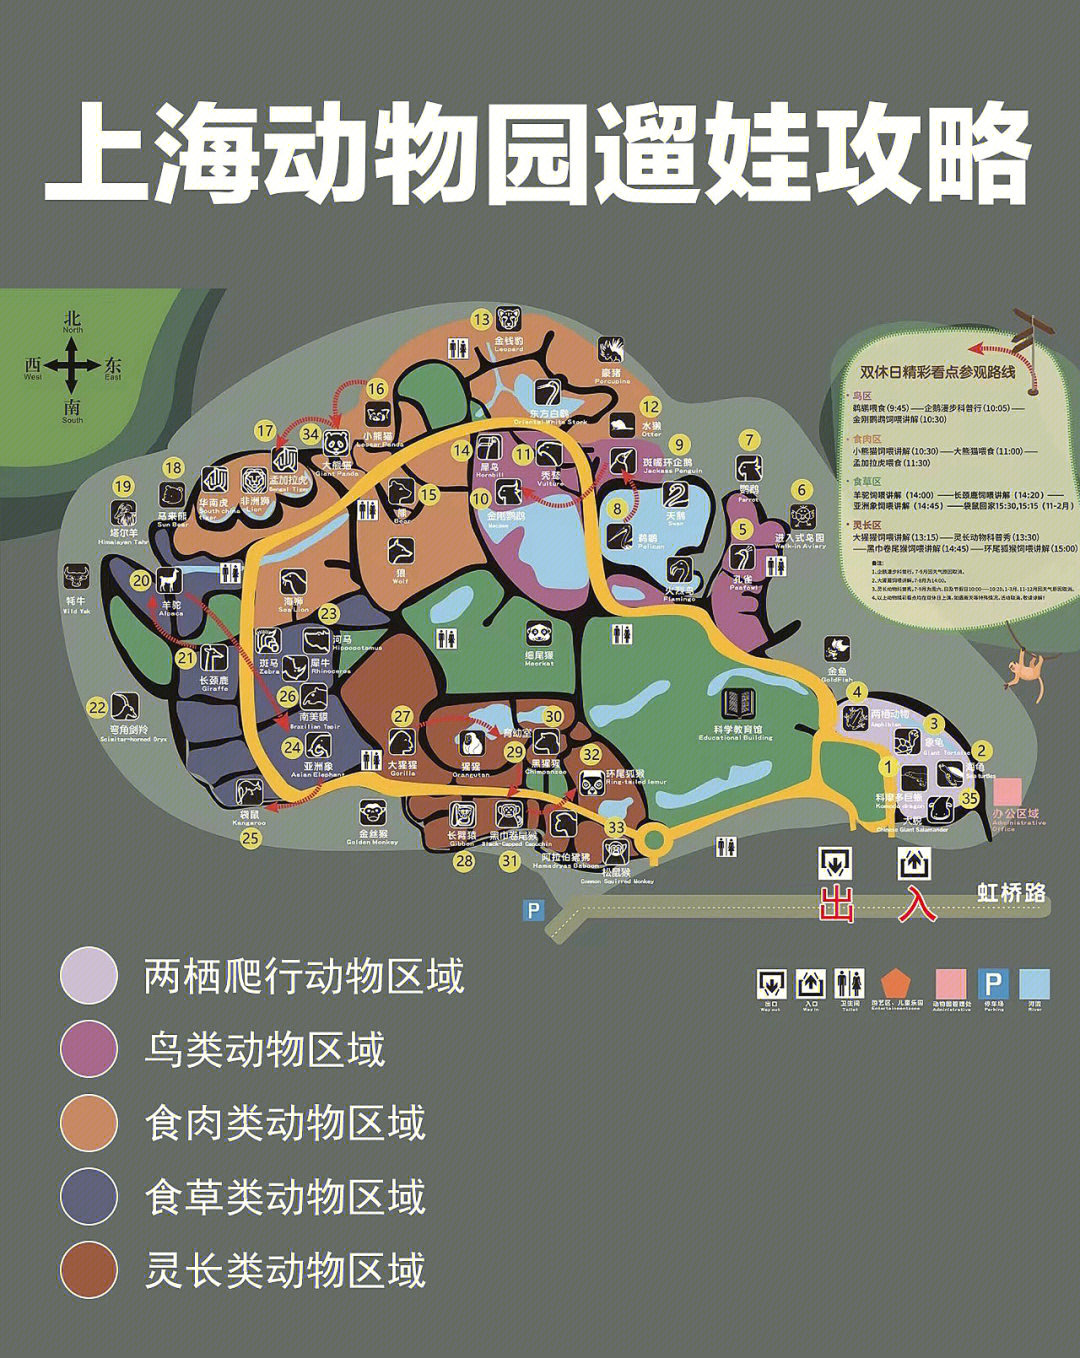 上海动物园轻松遛娃避坑攻略